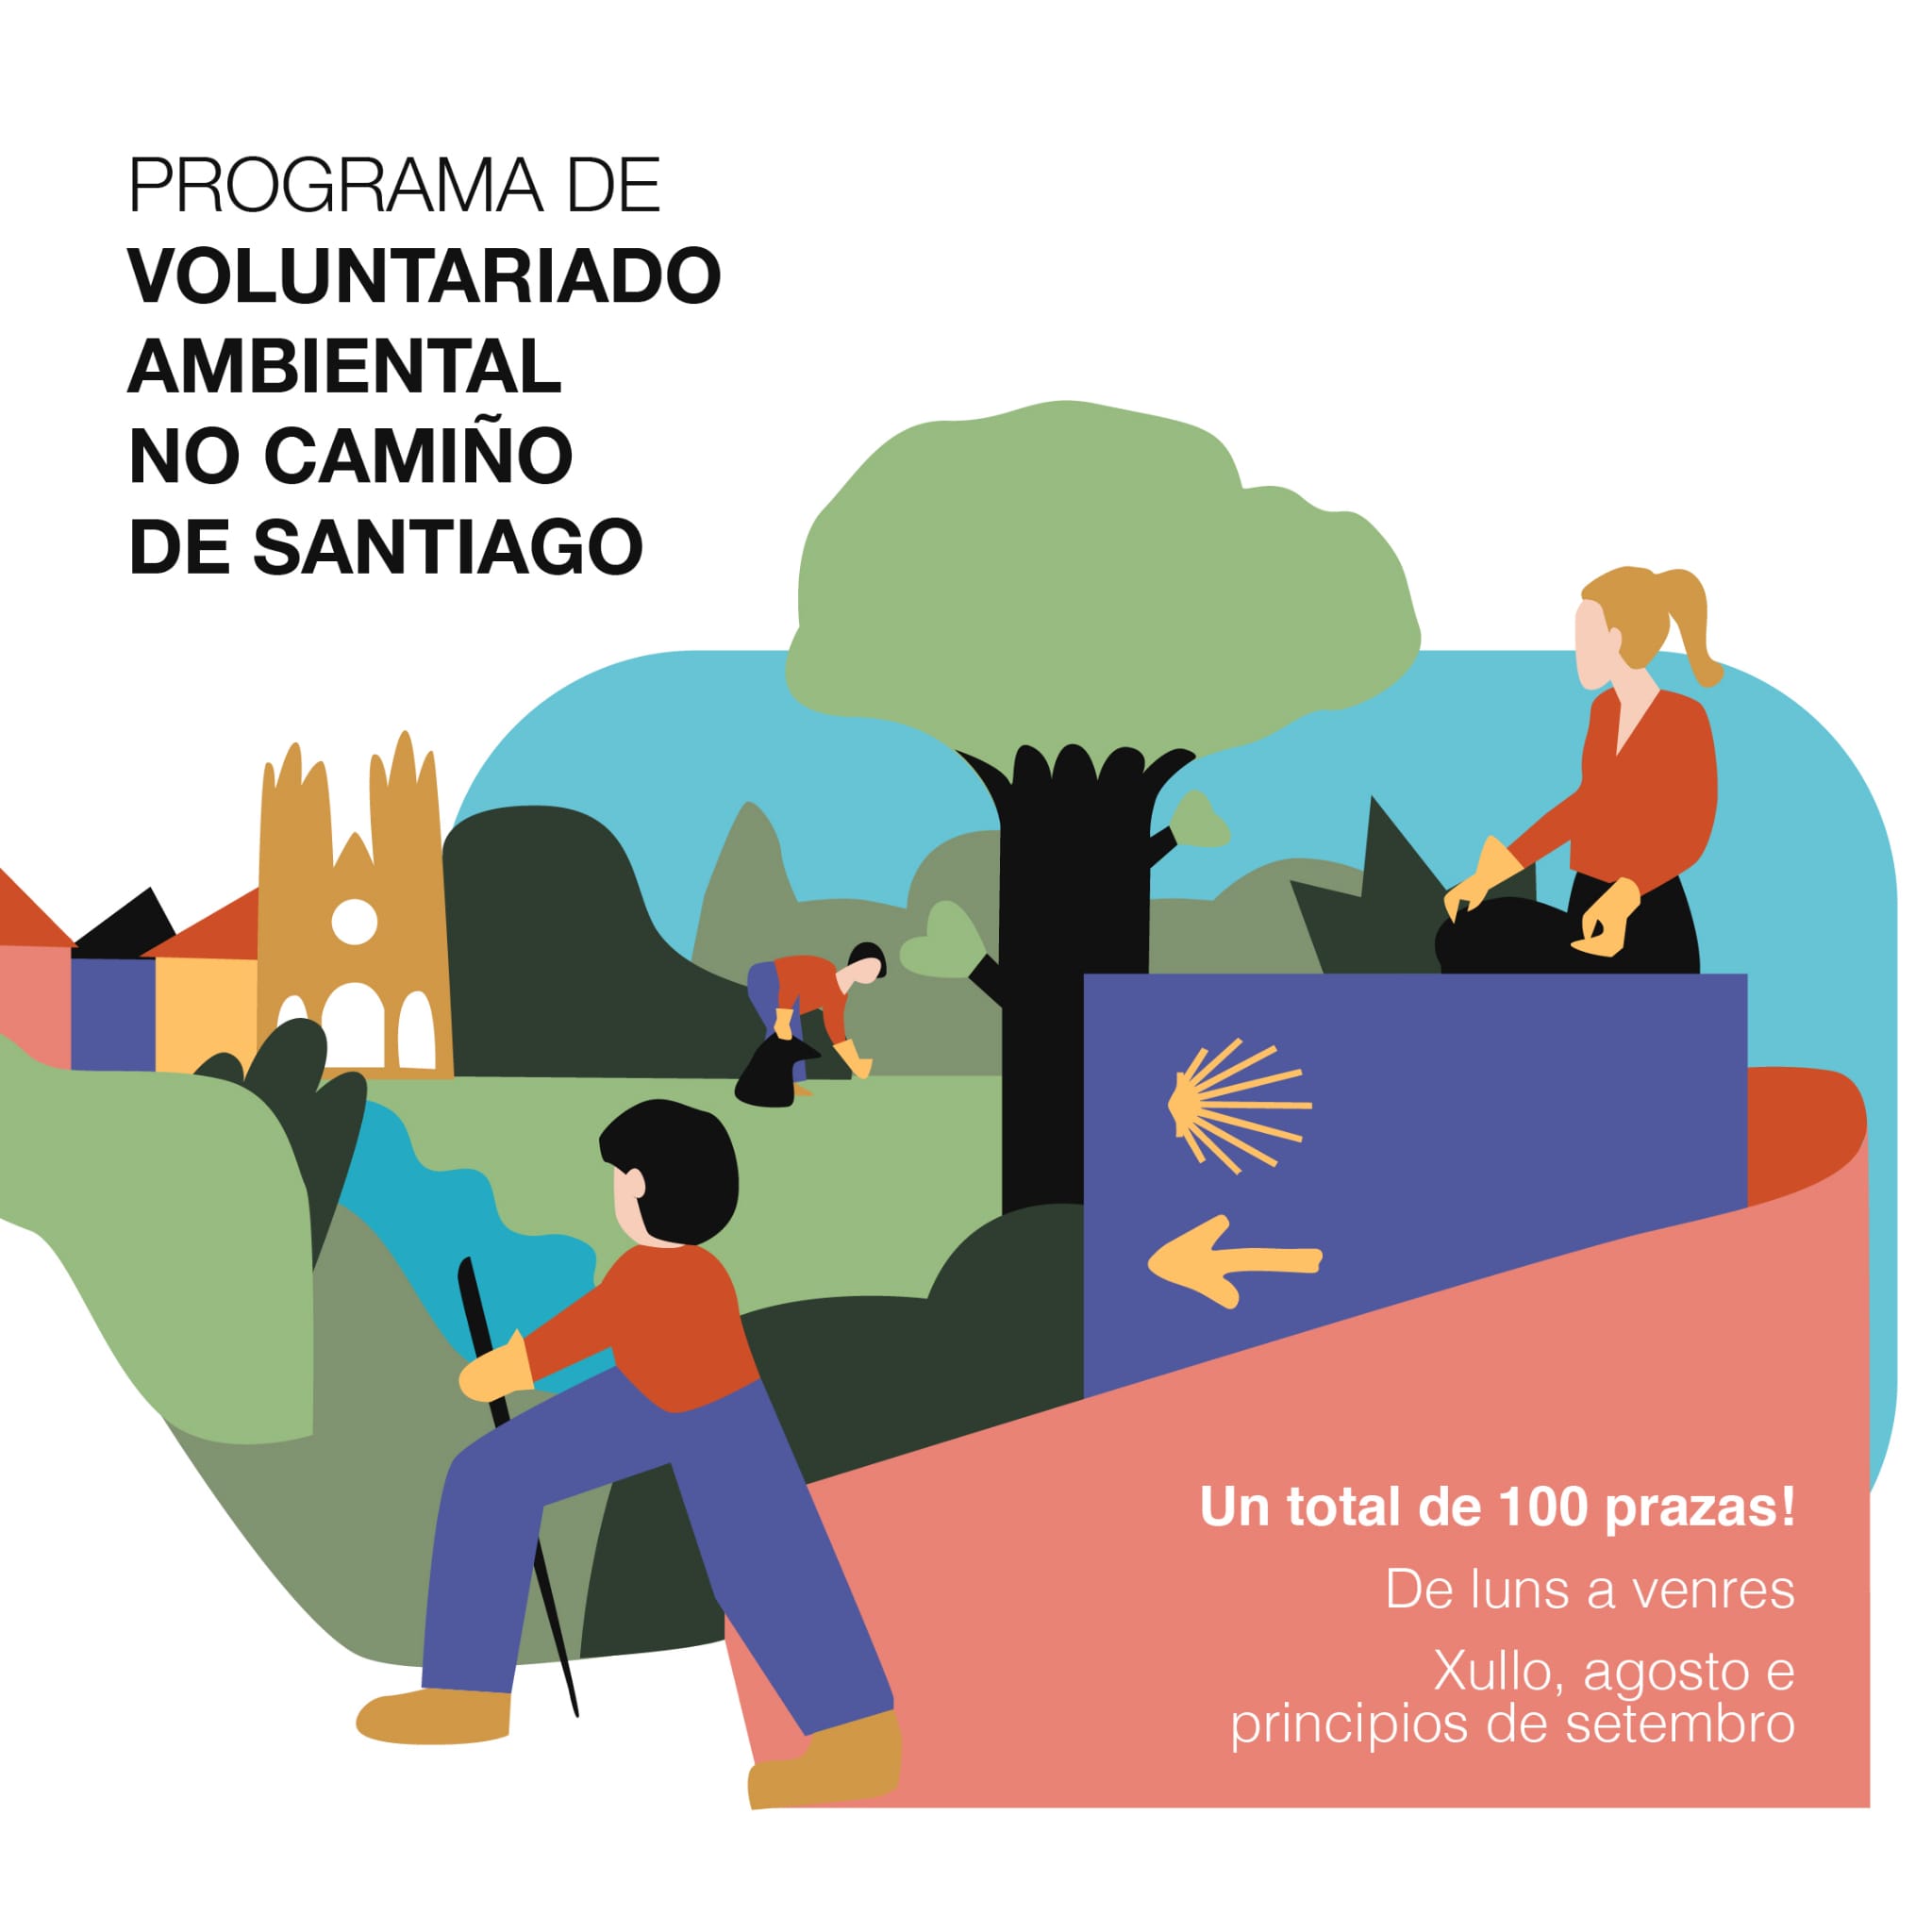 Voluntariado ambiental do Camiño de Santiago 2021